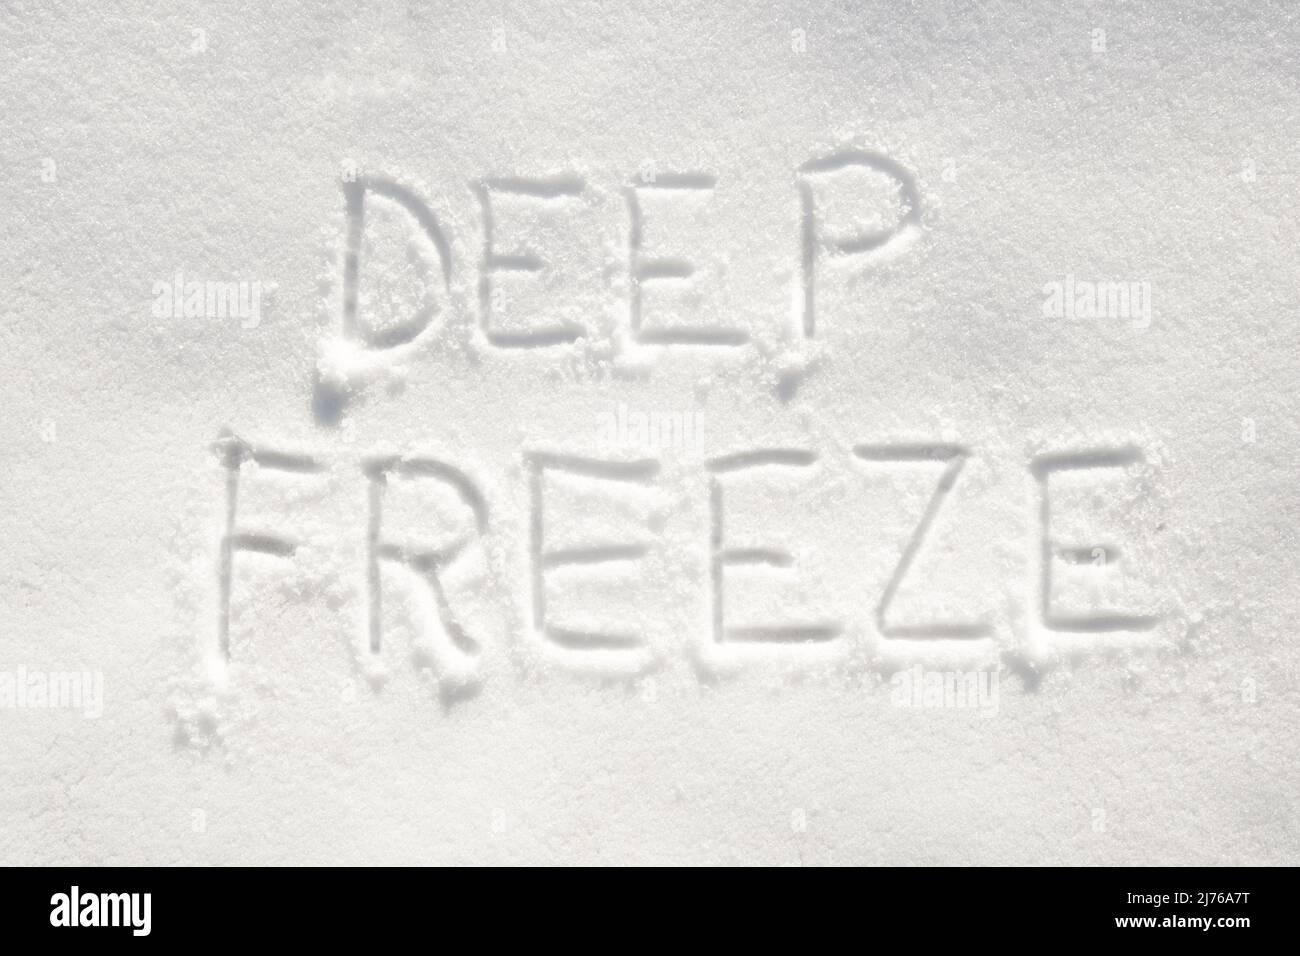 Texto 's freeze' escrito en la nieve; concepto de tiempo muy frío llegando Foto de stock